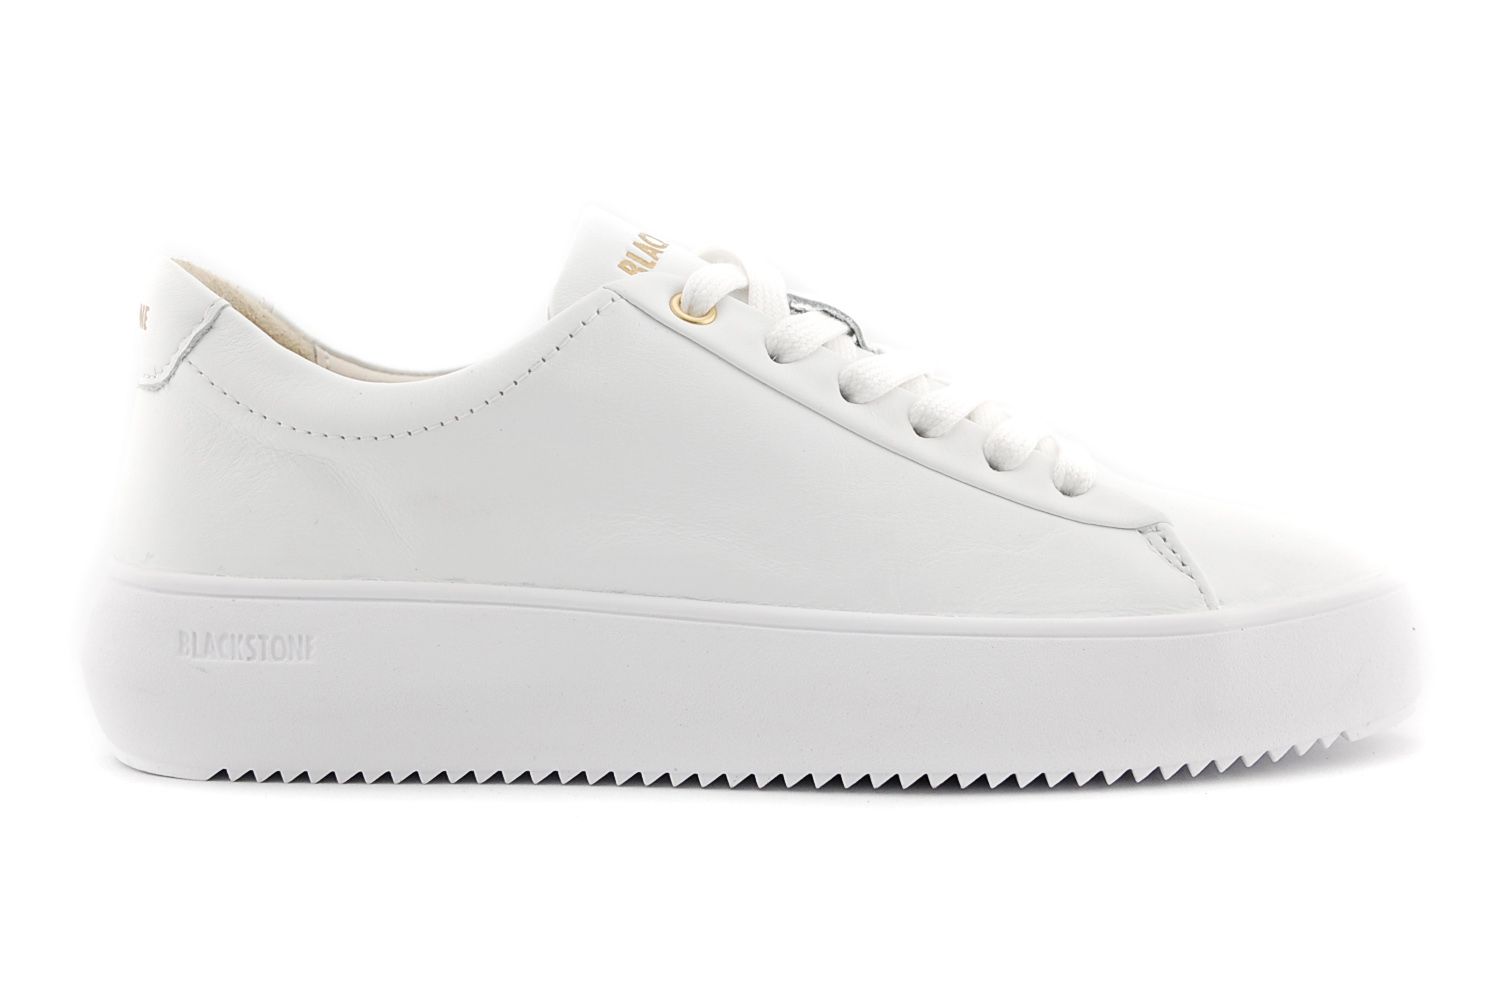 van nu af aan beheerder breedtegraad Blackstone ZL62 sneaker wit leer online kopen bij Past Schoenen.